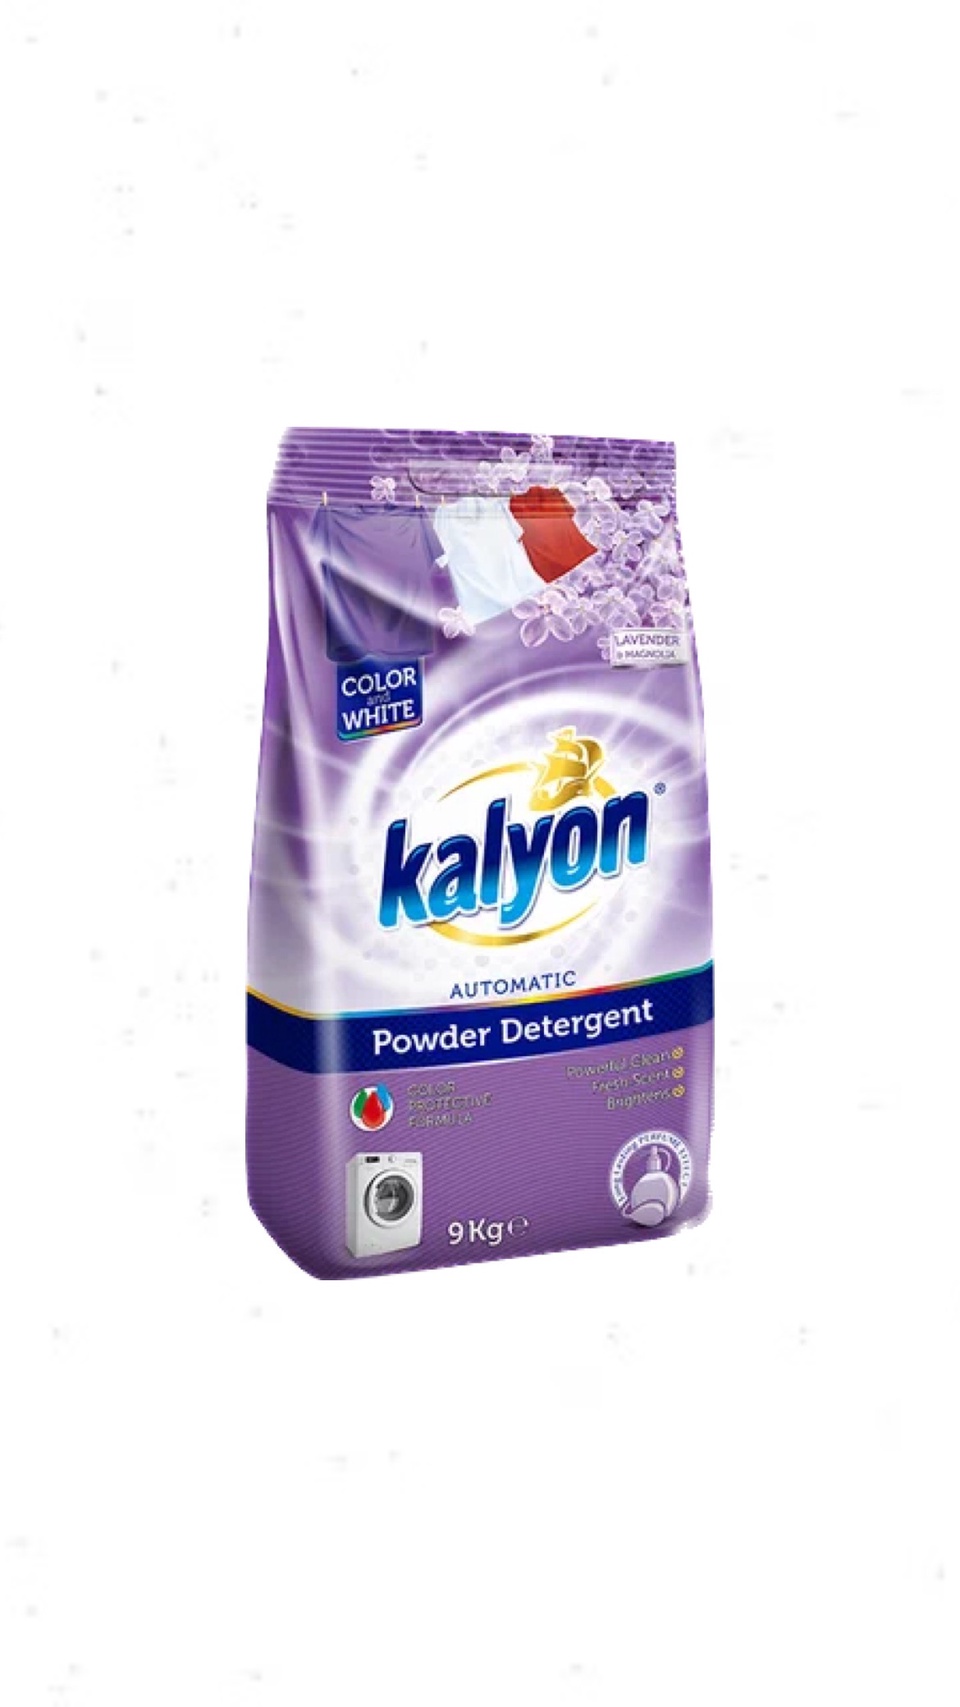 Средство для стирки универсальный стиральный порошок автомат для белого и цветного белья KALYON POWDER DETERGENT Лаванда и Магнолия 9 кг - 1 300 ₽, заказать онлайн.